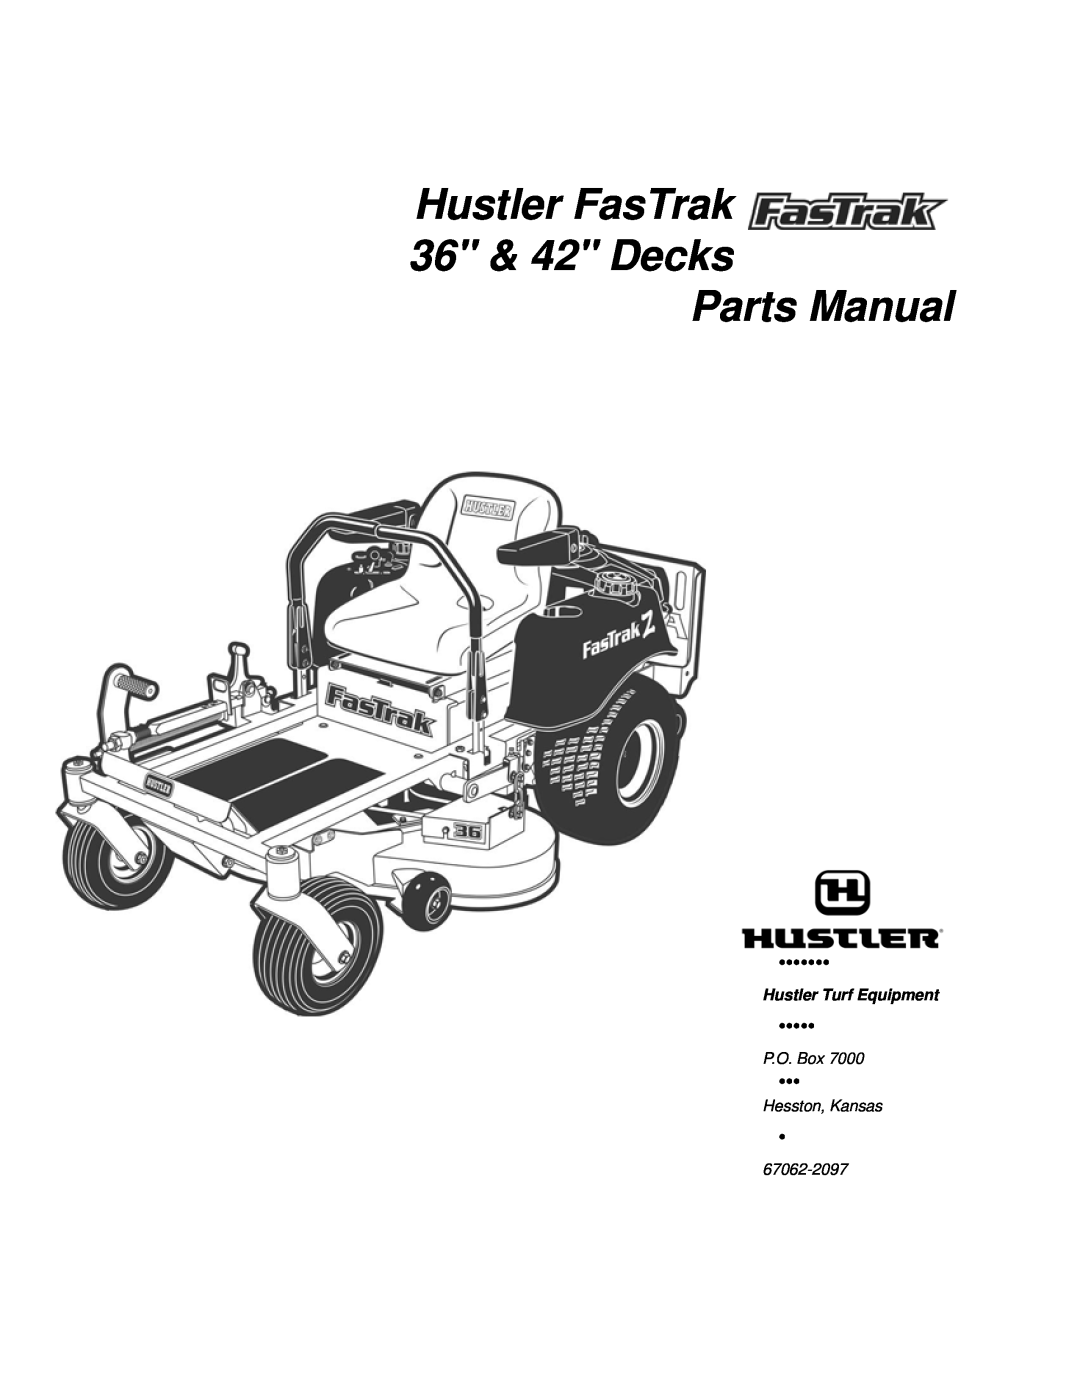 Hustler Turf none manual Hustler FasTrak 36 & 42 Decks Parts Manual, Hustler Turf Equipment, P.O. Box, Hesston, Kansas 